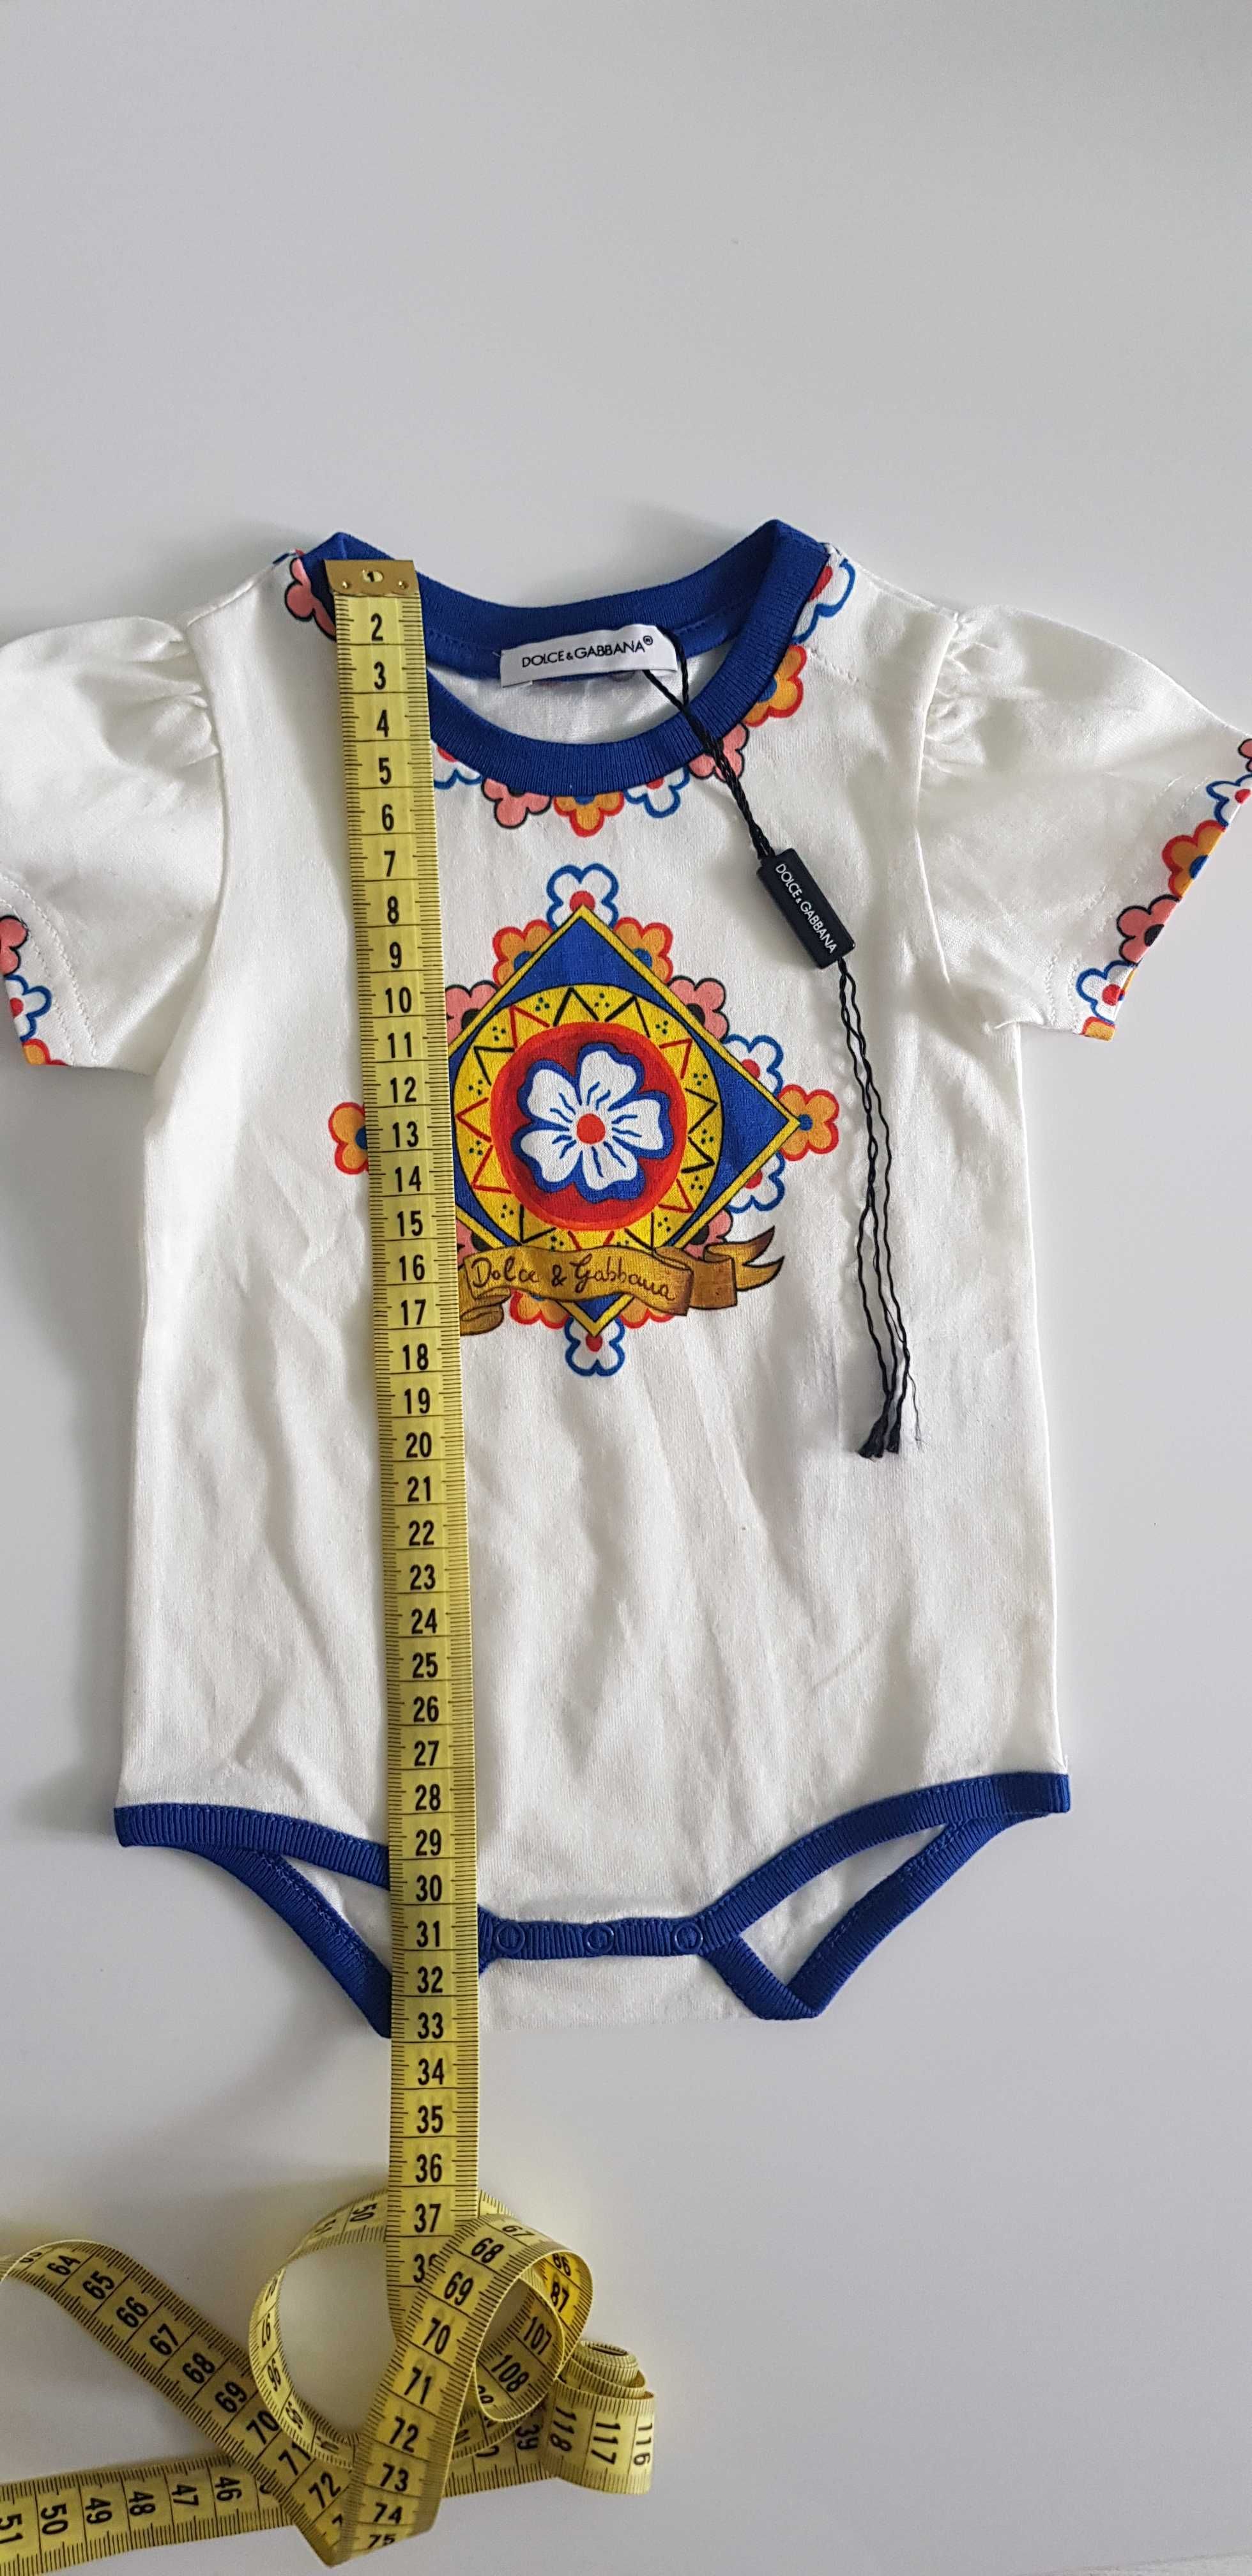 Nowe Oryginalne Body niemowlęce Dolce&Gabbana rozm.3-6miesięcy